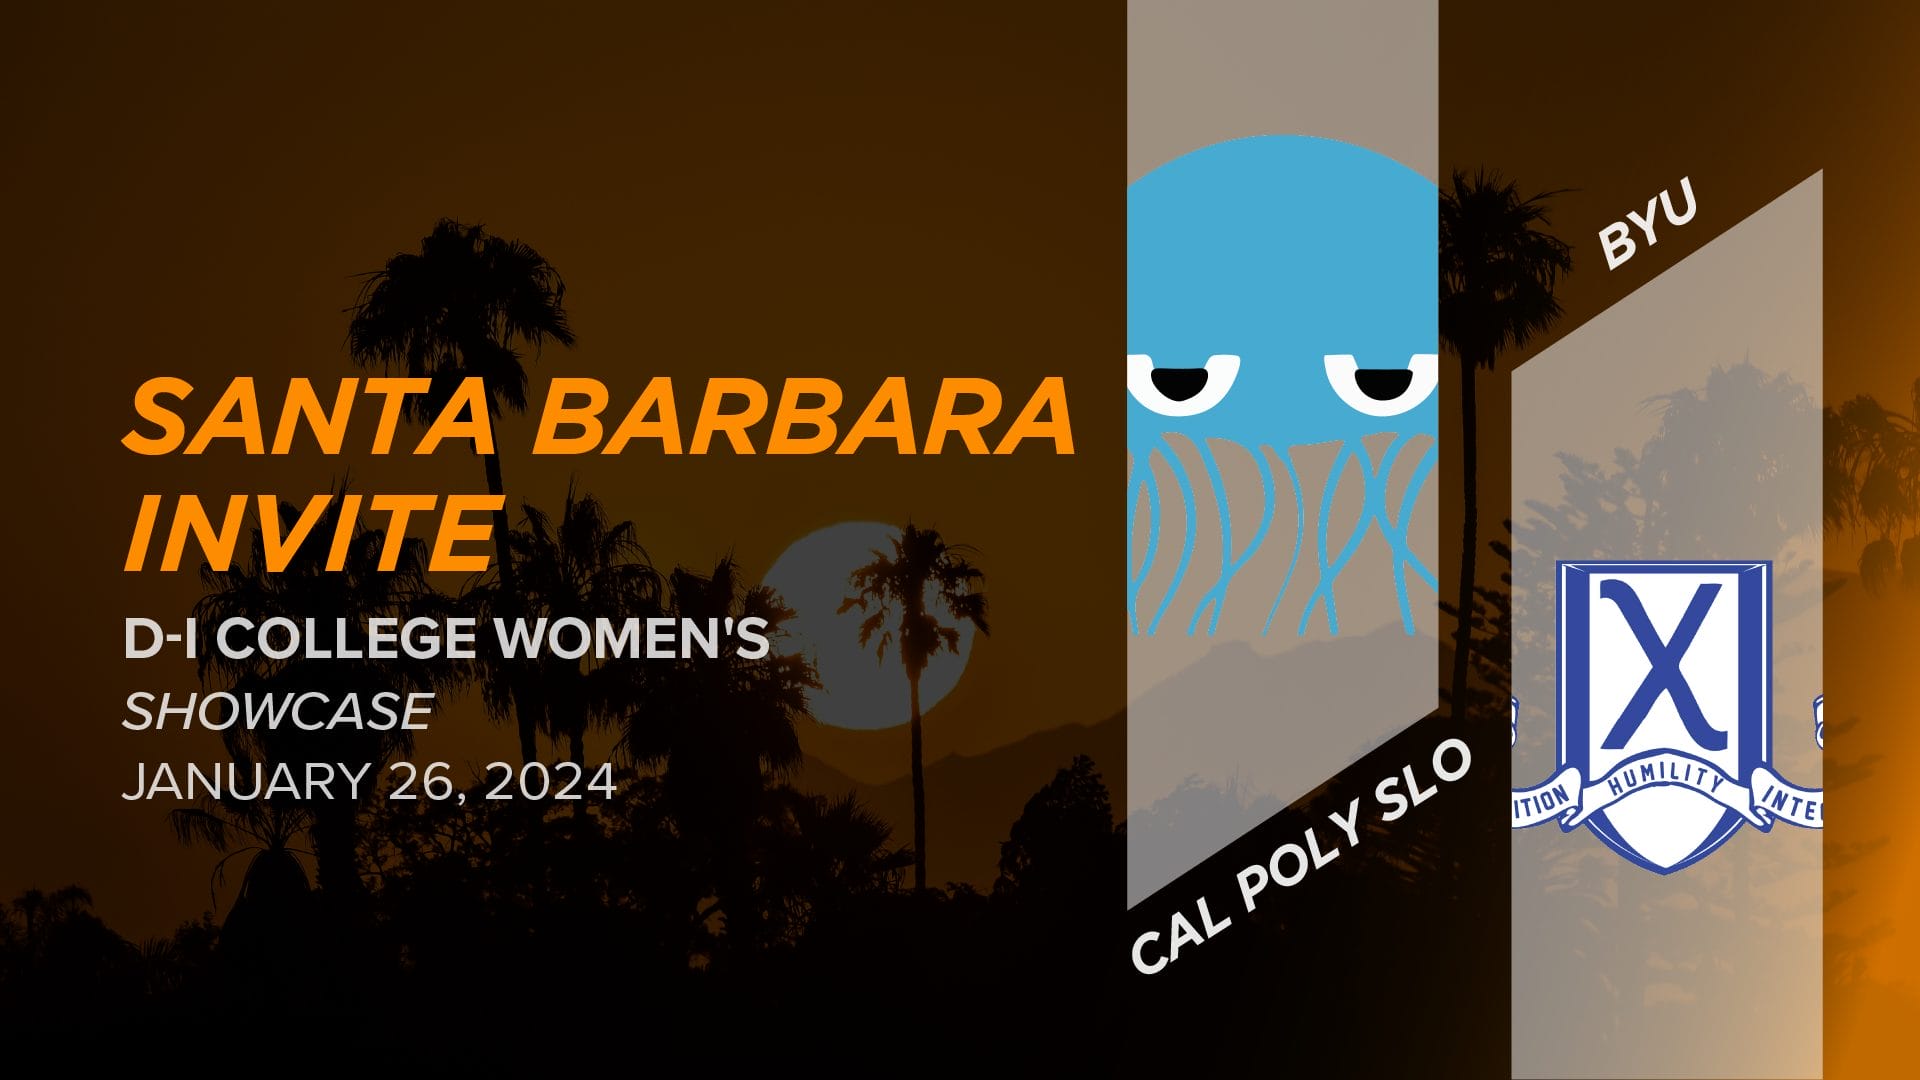 Cal Poly SLO vs. BYU (Women's Showcase) 2024 Santa Barbara Invite (D